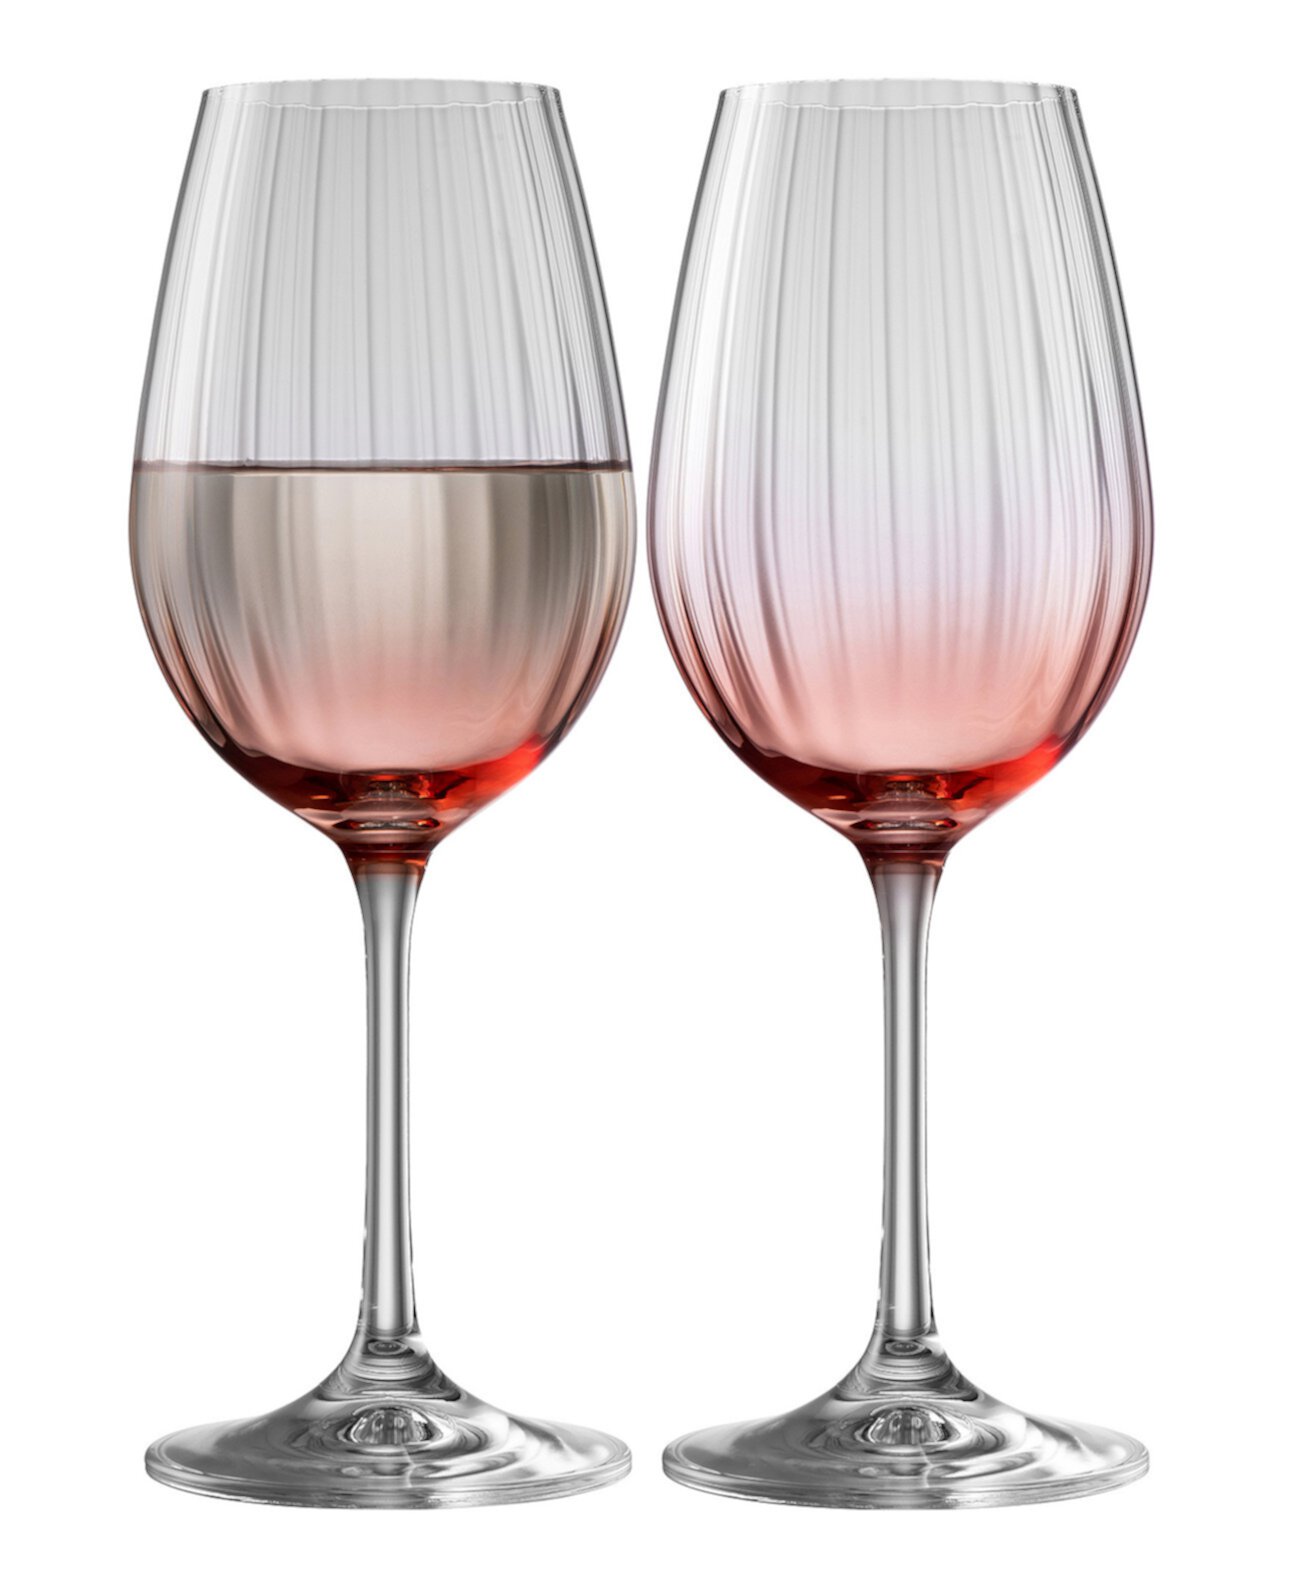 Galway Crystal Erne Wine Glasses, Set of 2 Belleek